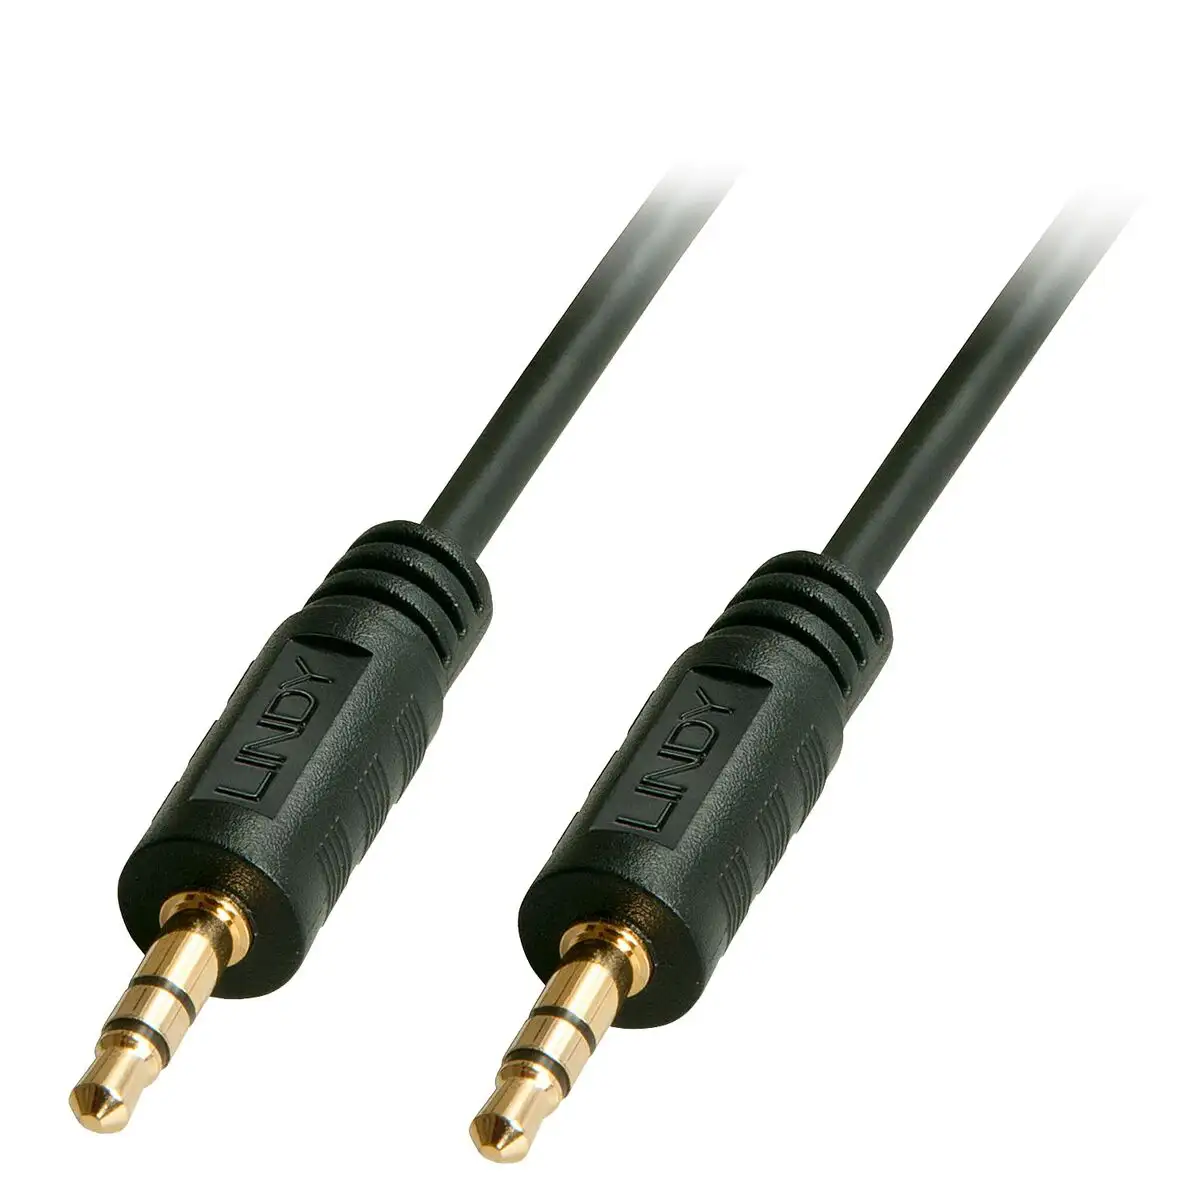 Cable audio jack 3 5 mm lindy 35644 5 m_1004. DIAYTAR SENEGAL - Où la Qualité et la Diversité Fusionnent. Explorez notre boutique en ligne pour découvrir une gamme variée de produits qui incarnent l'excellence et l'authenticité.